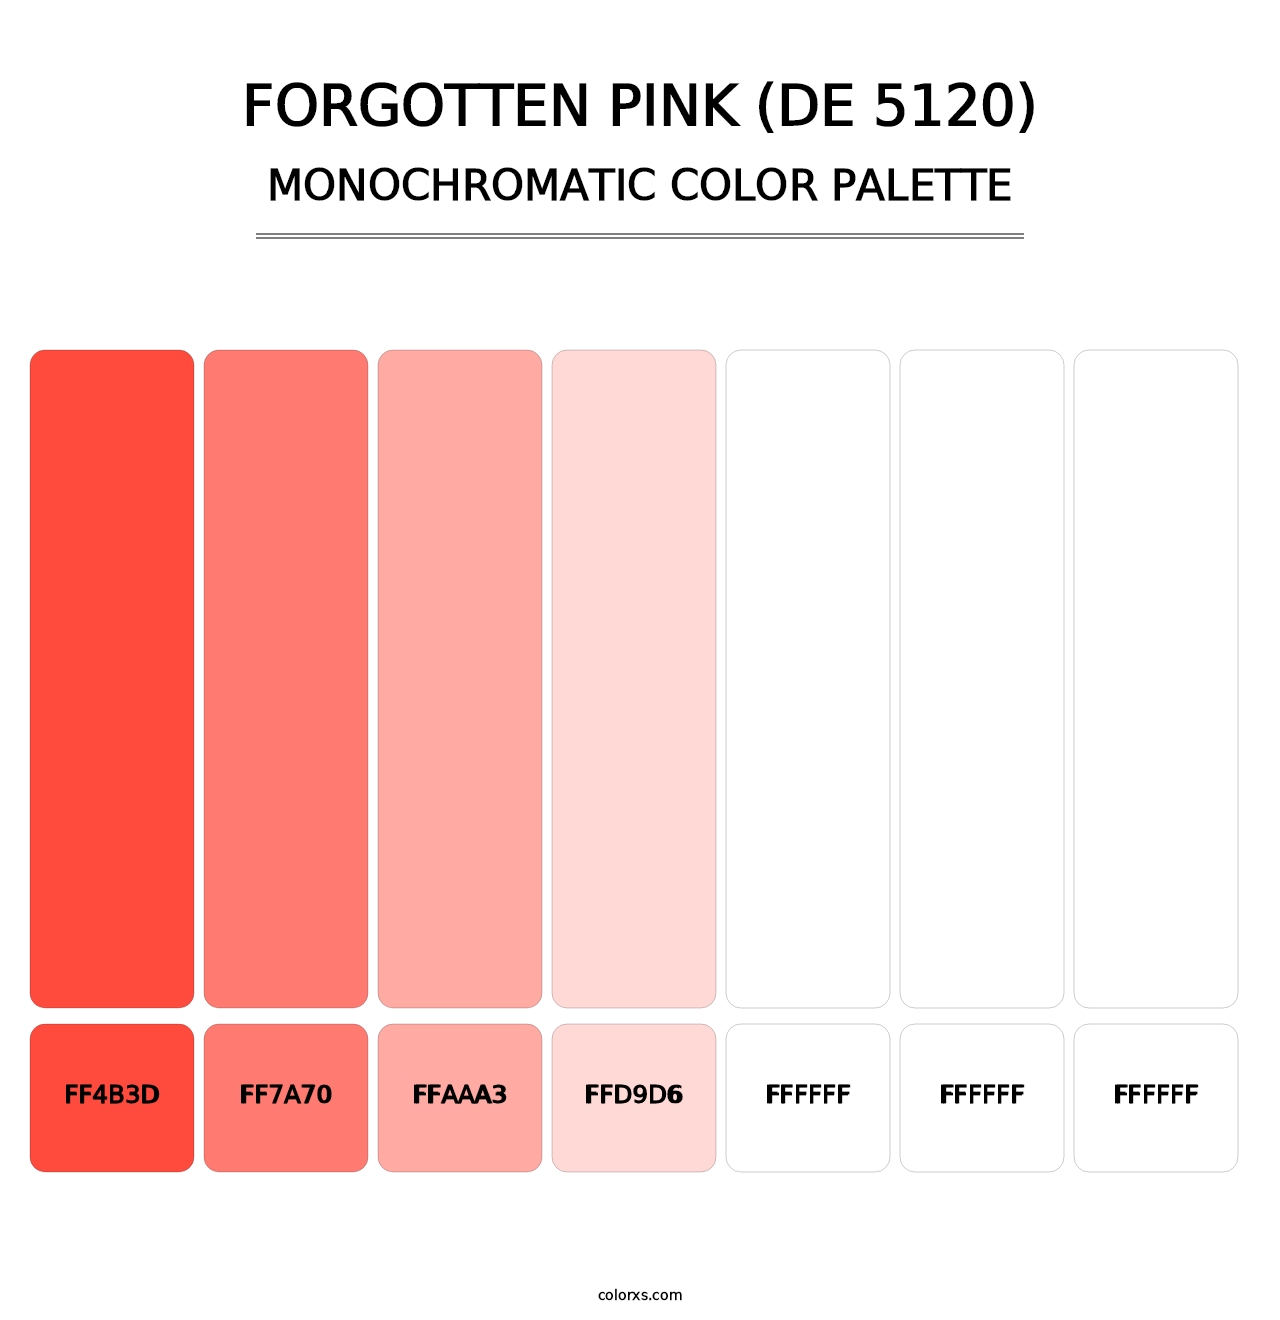 Forgotten Pink (DE 5120) - Monochromatic Color Palette